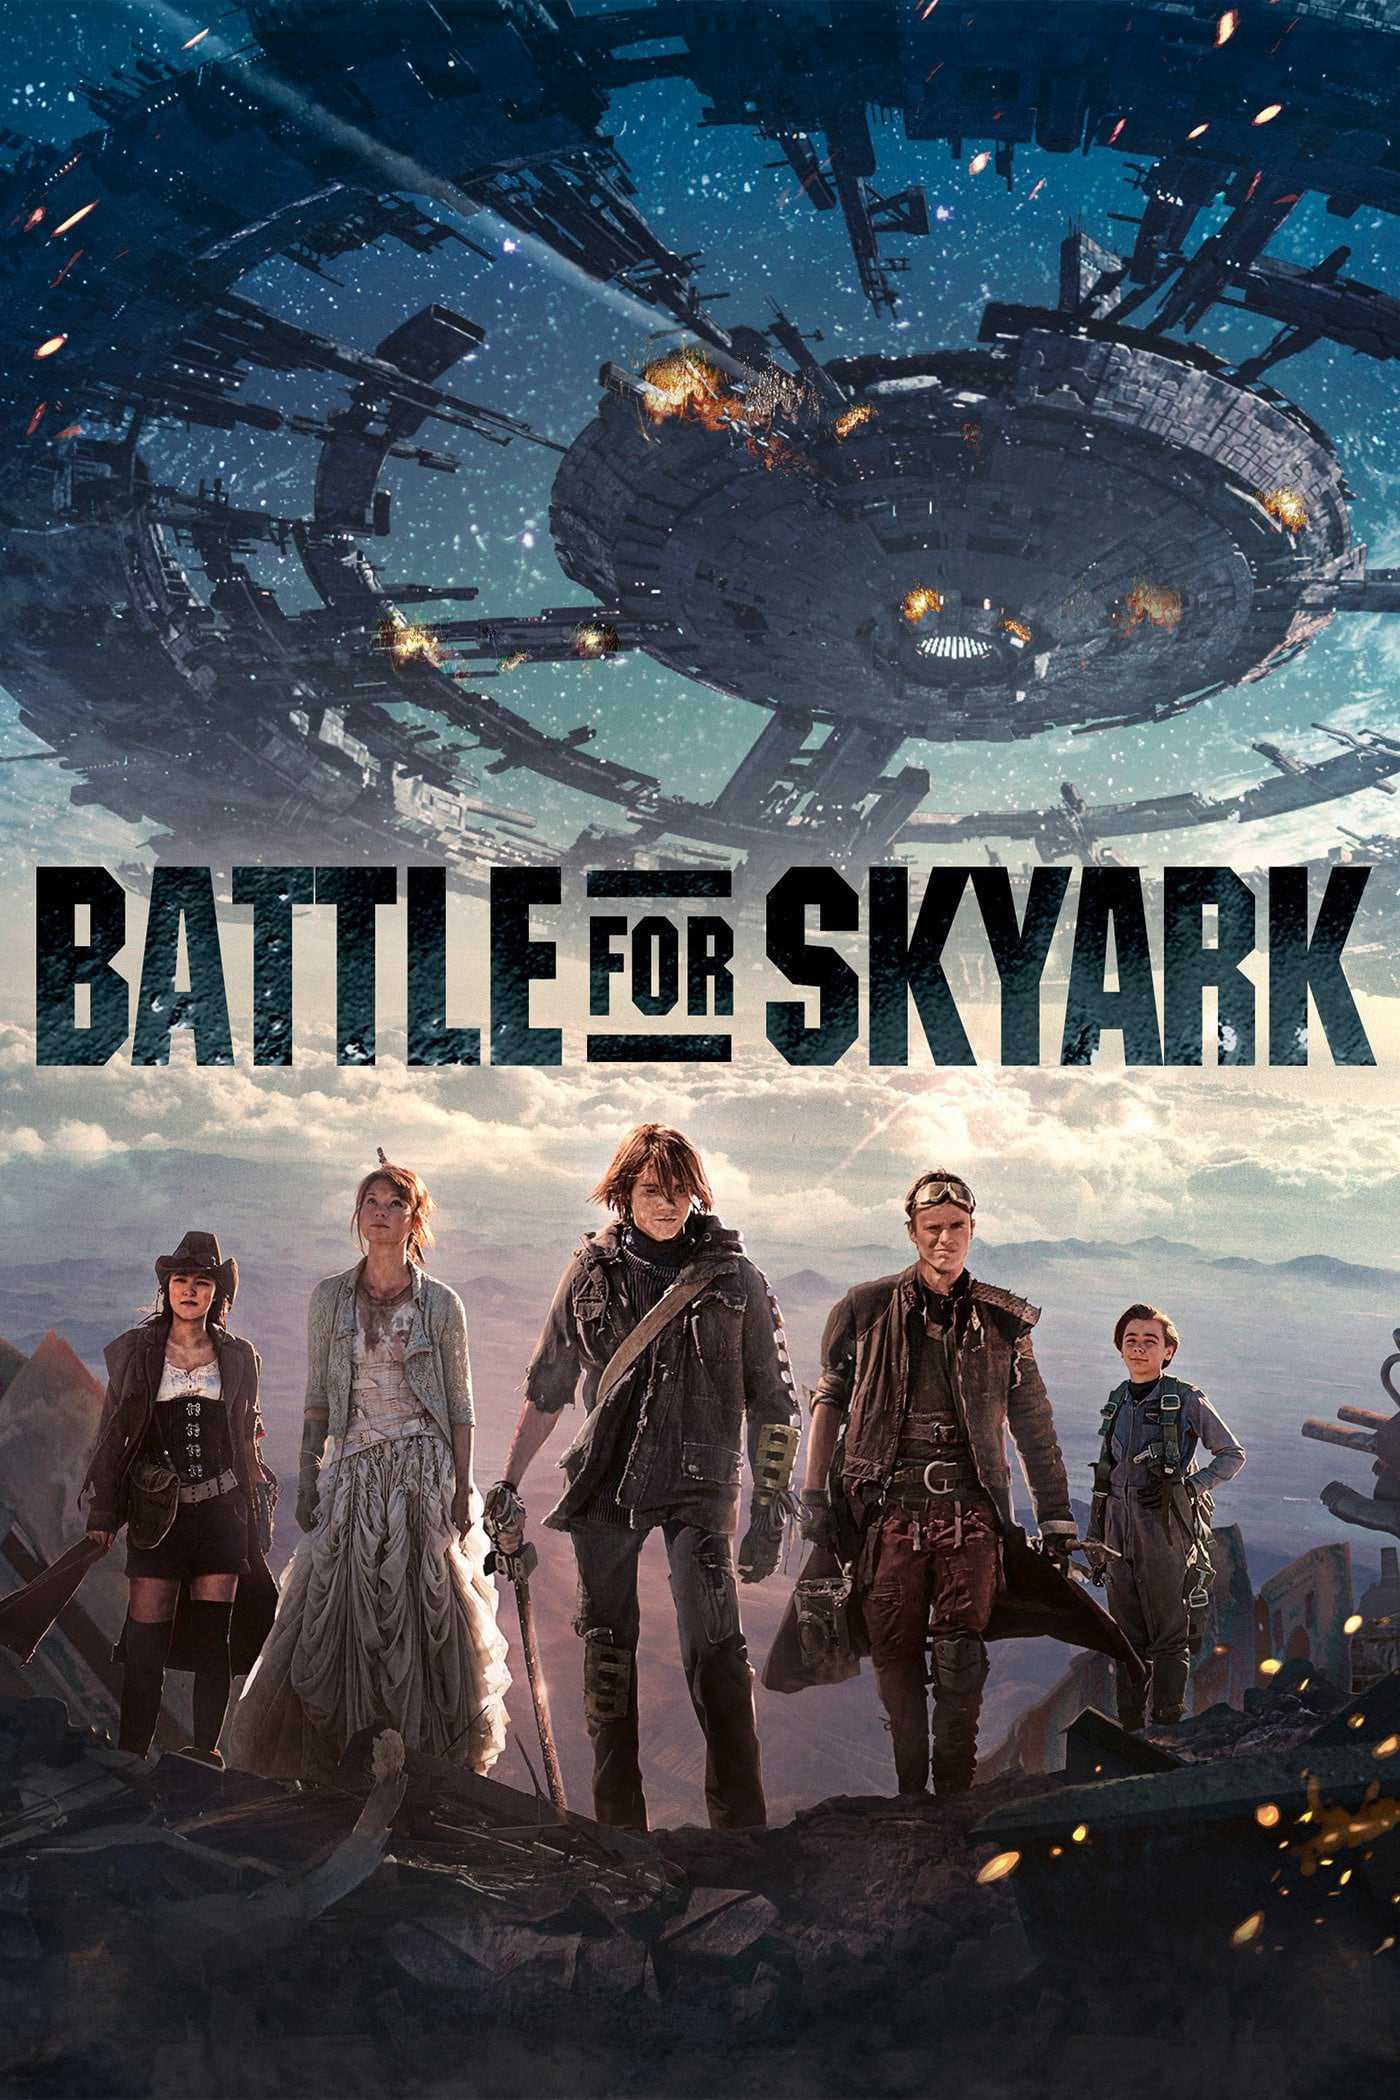 Battle for skyark - Battle for skyark